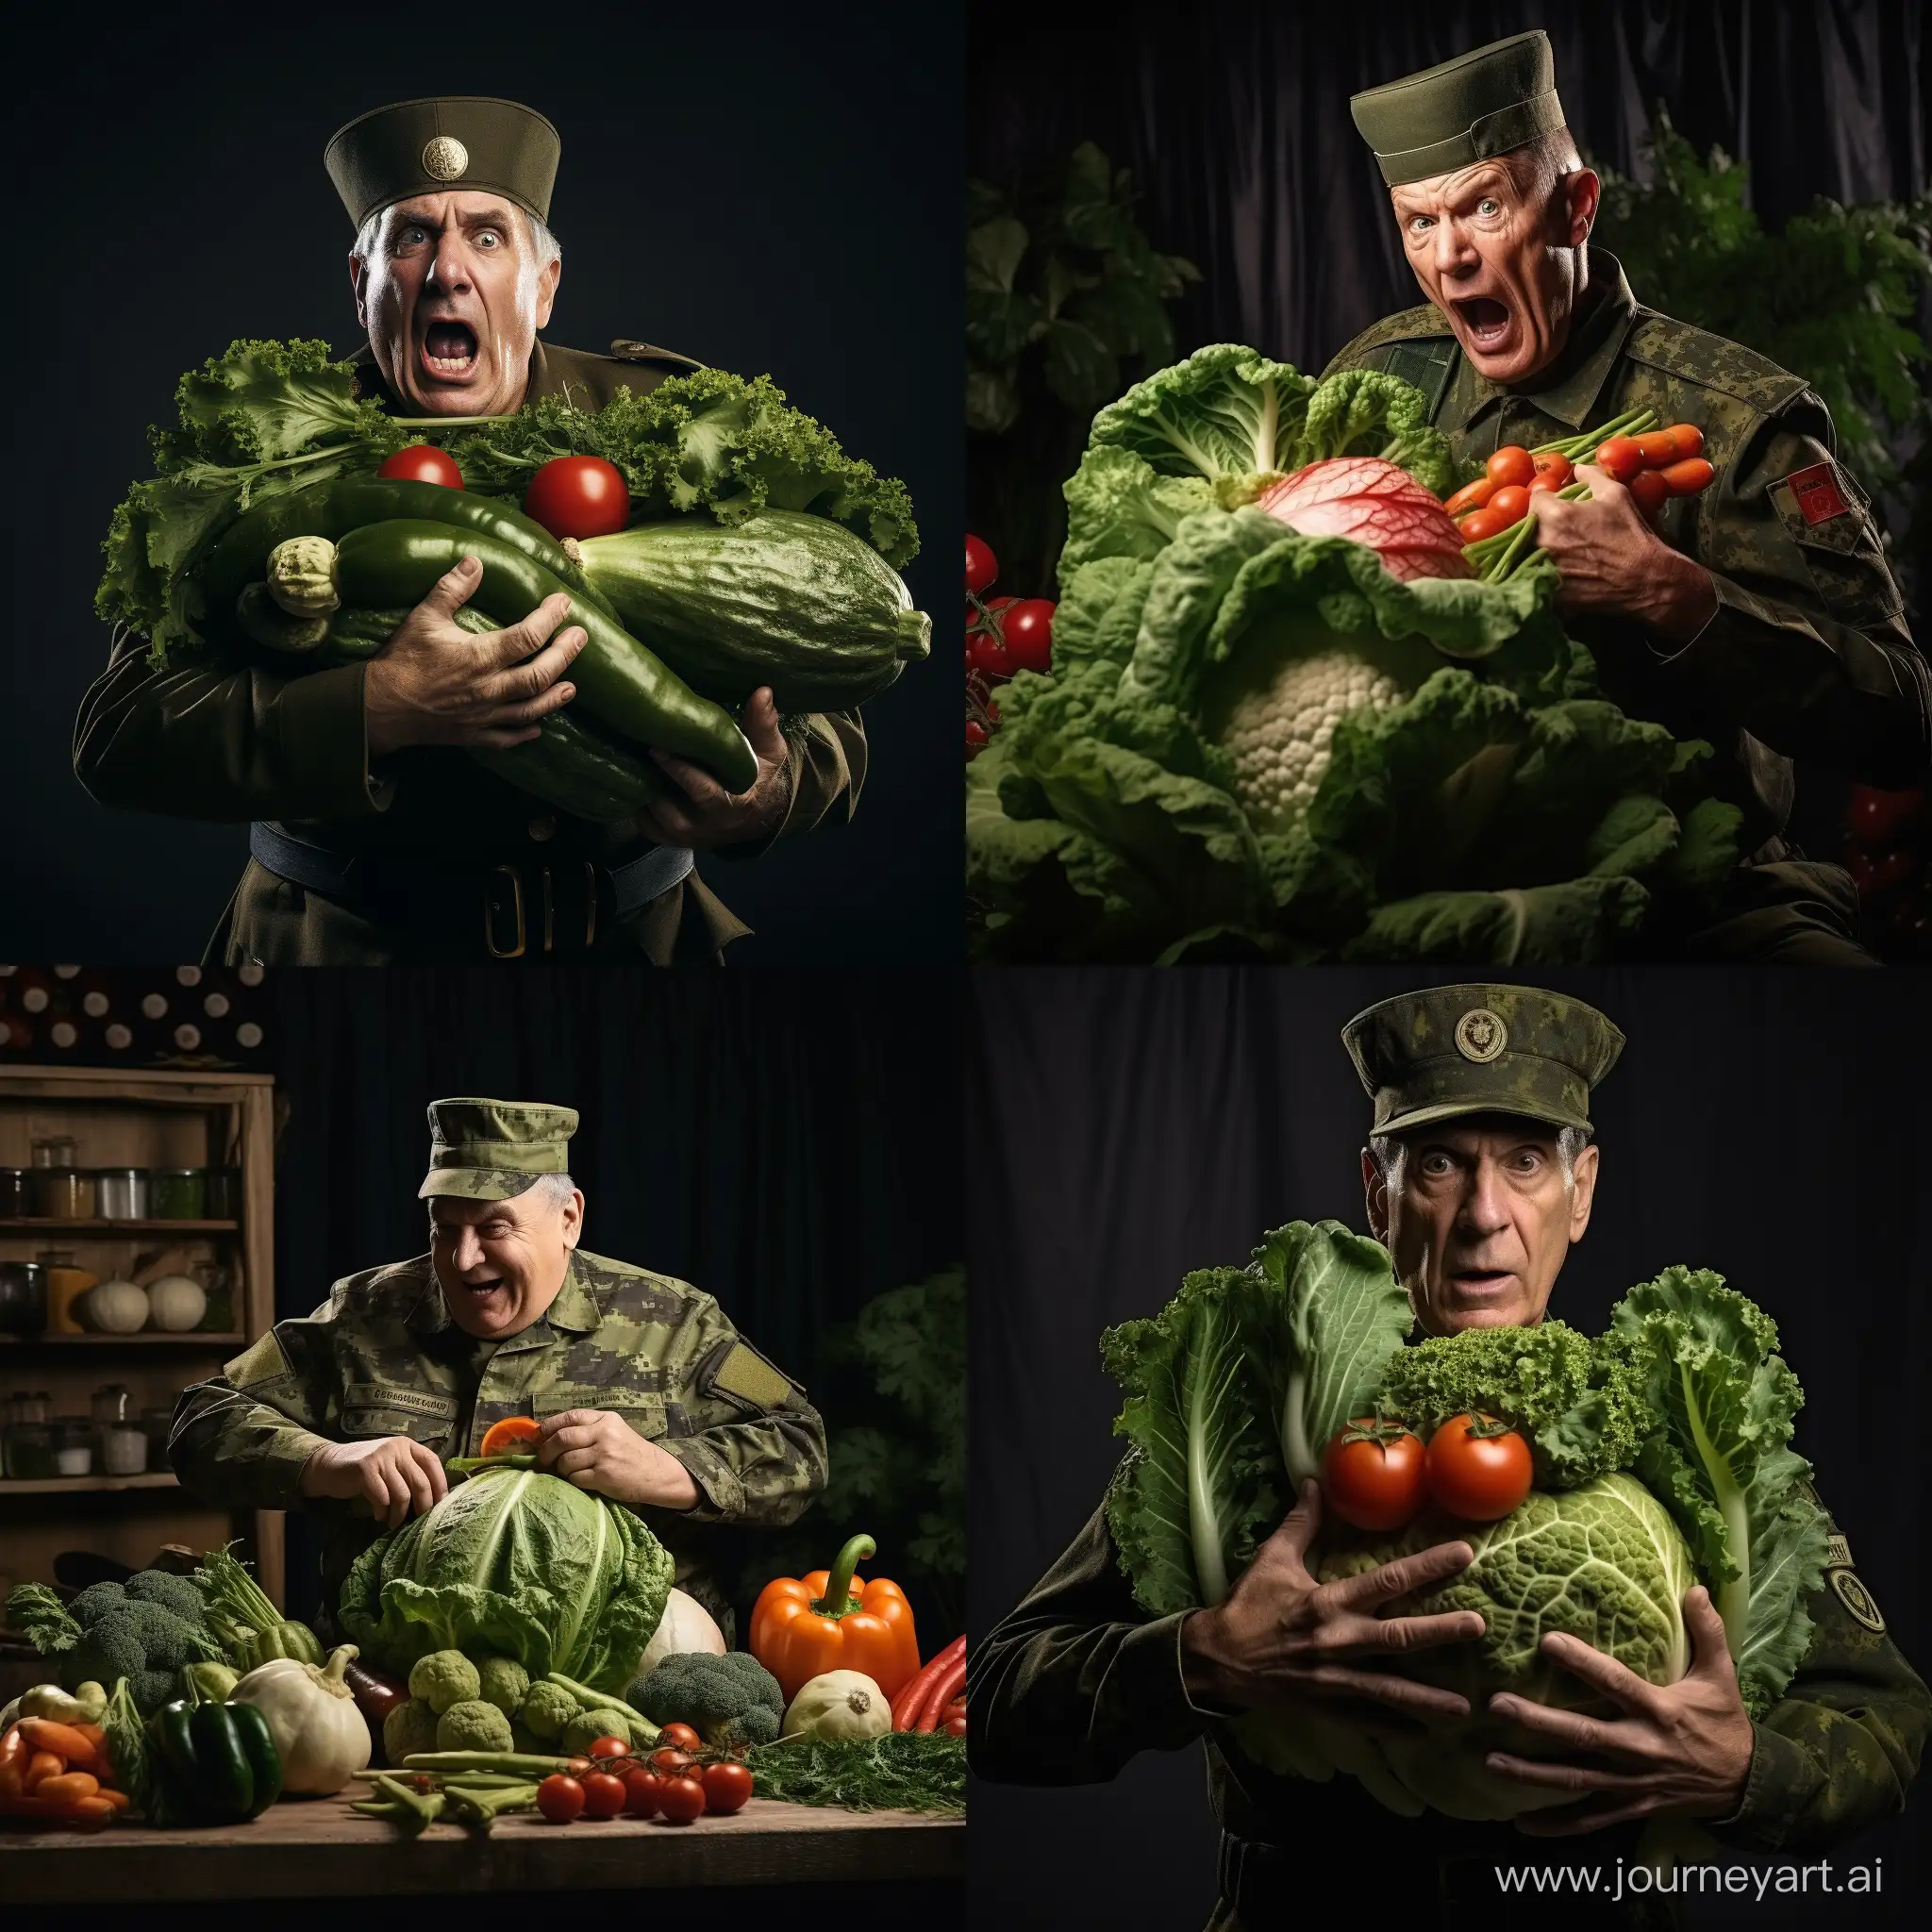 Senior-Lieutenant-Battles-Giant-Vegetables-in-Military-Uniform